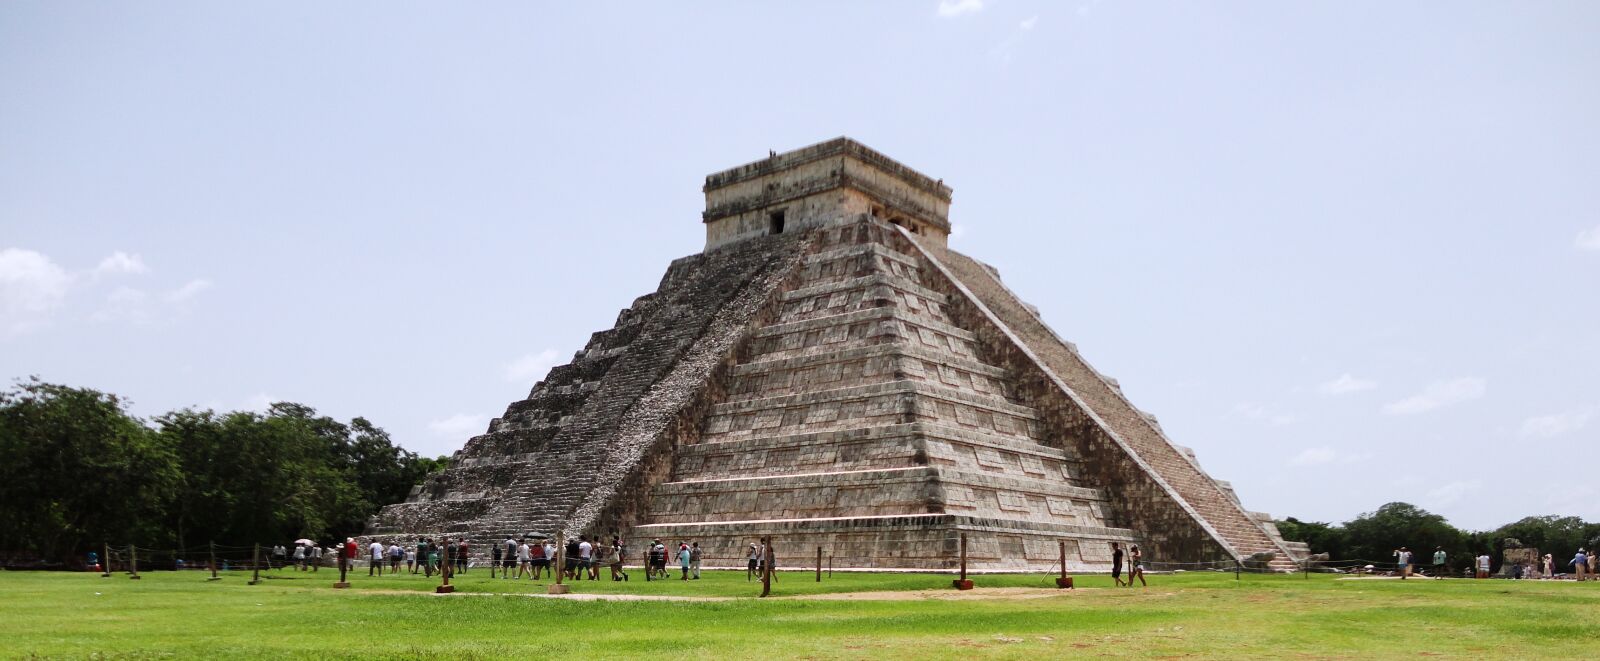 Sony Cyber-shot DSC-W570 sample photo. Cancun, pyramid, maya photography